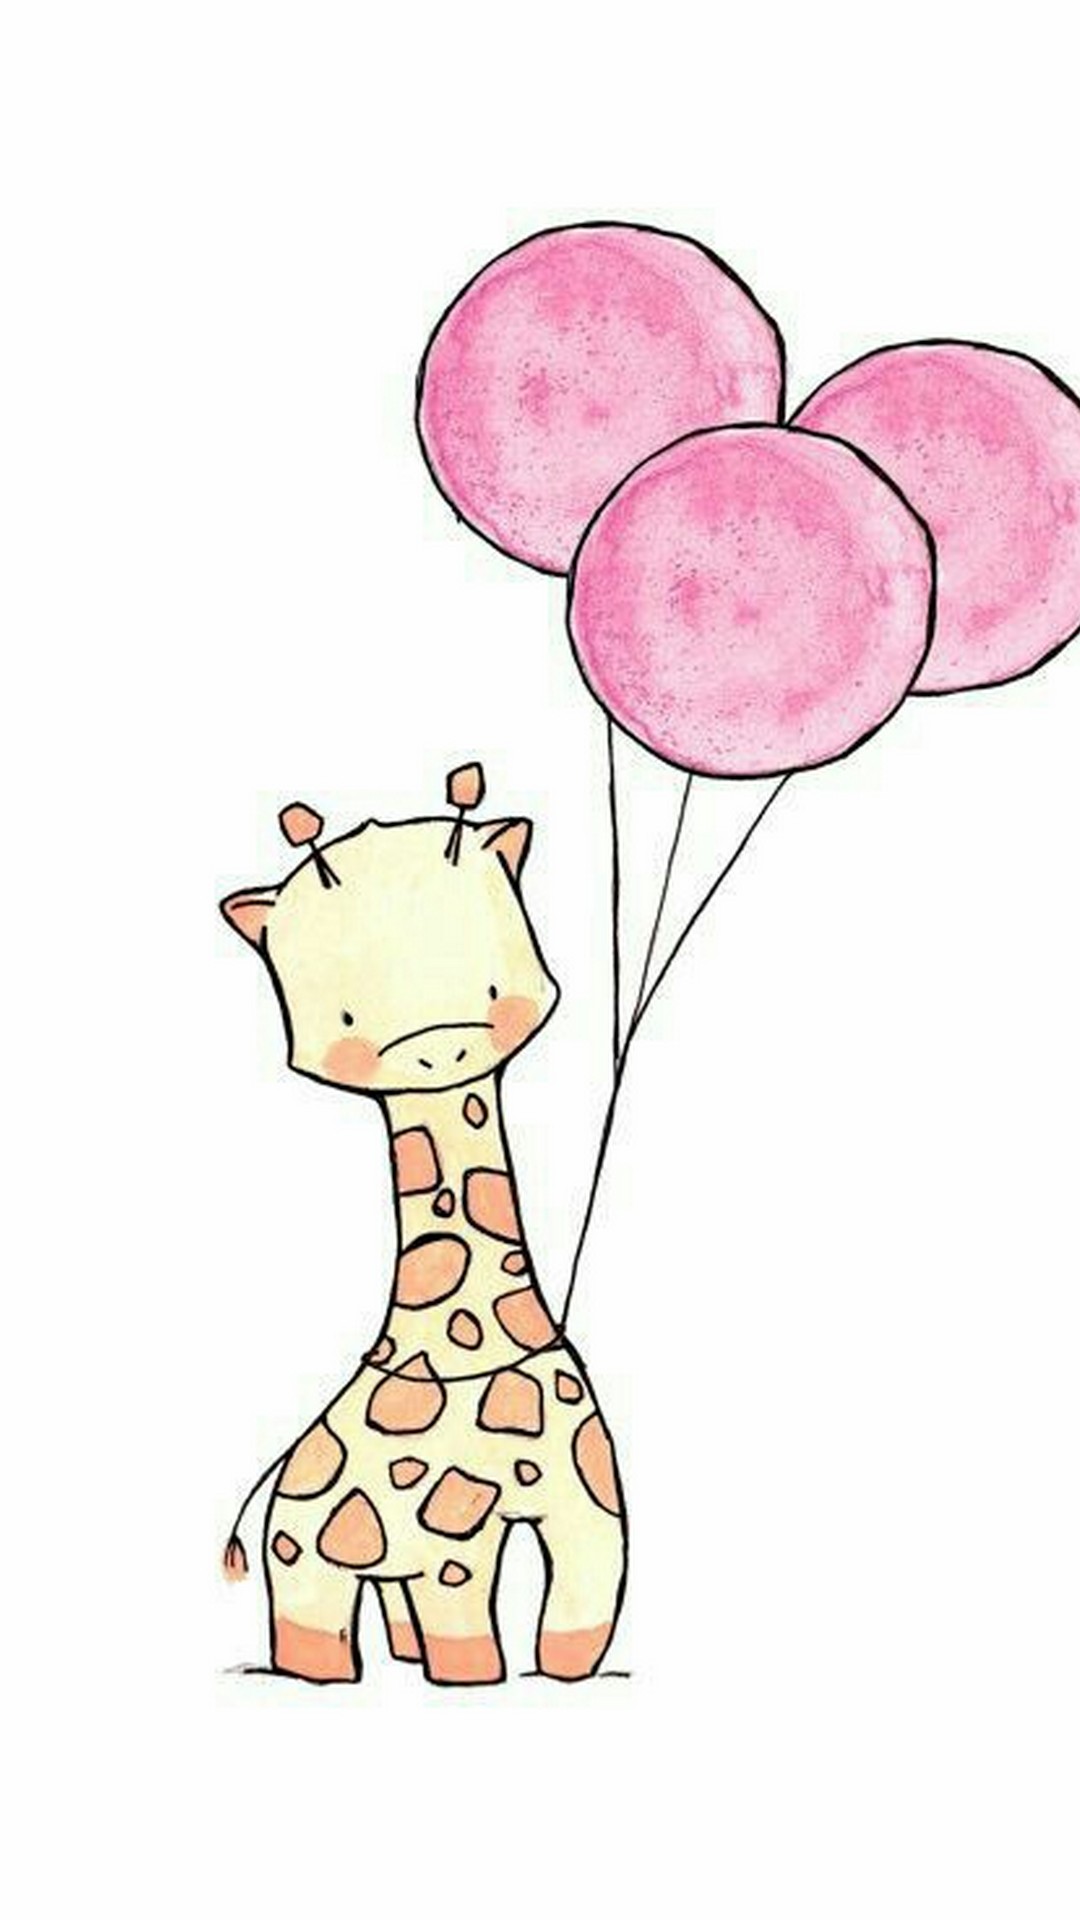 Giraffe Wallpaper Cartoon iPhone resolution 1080x1920